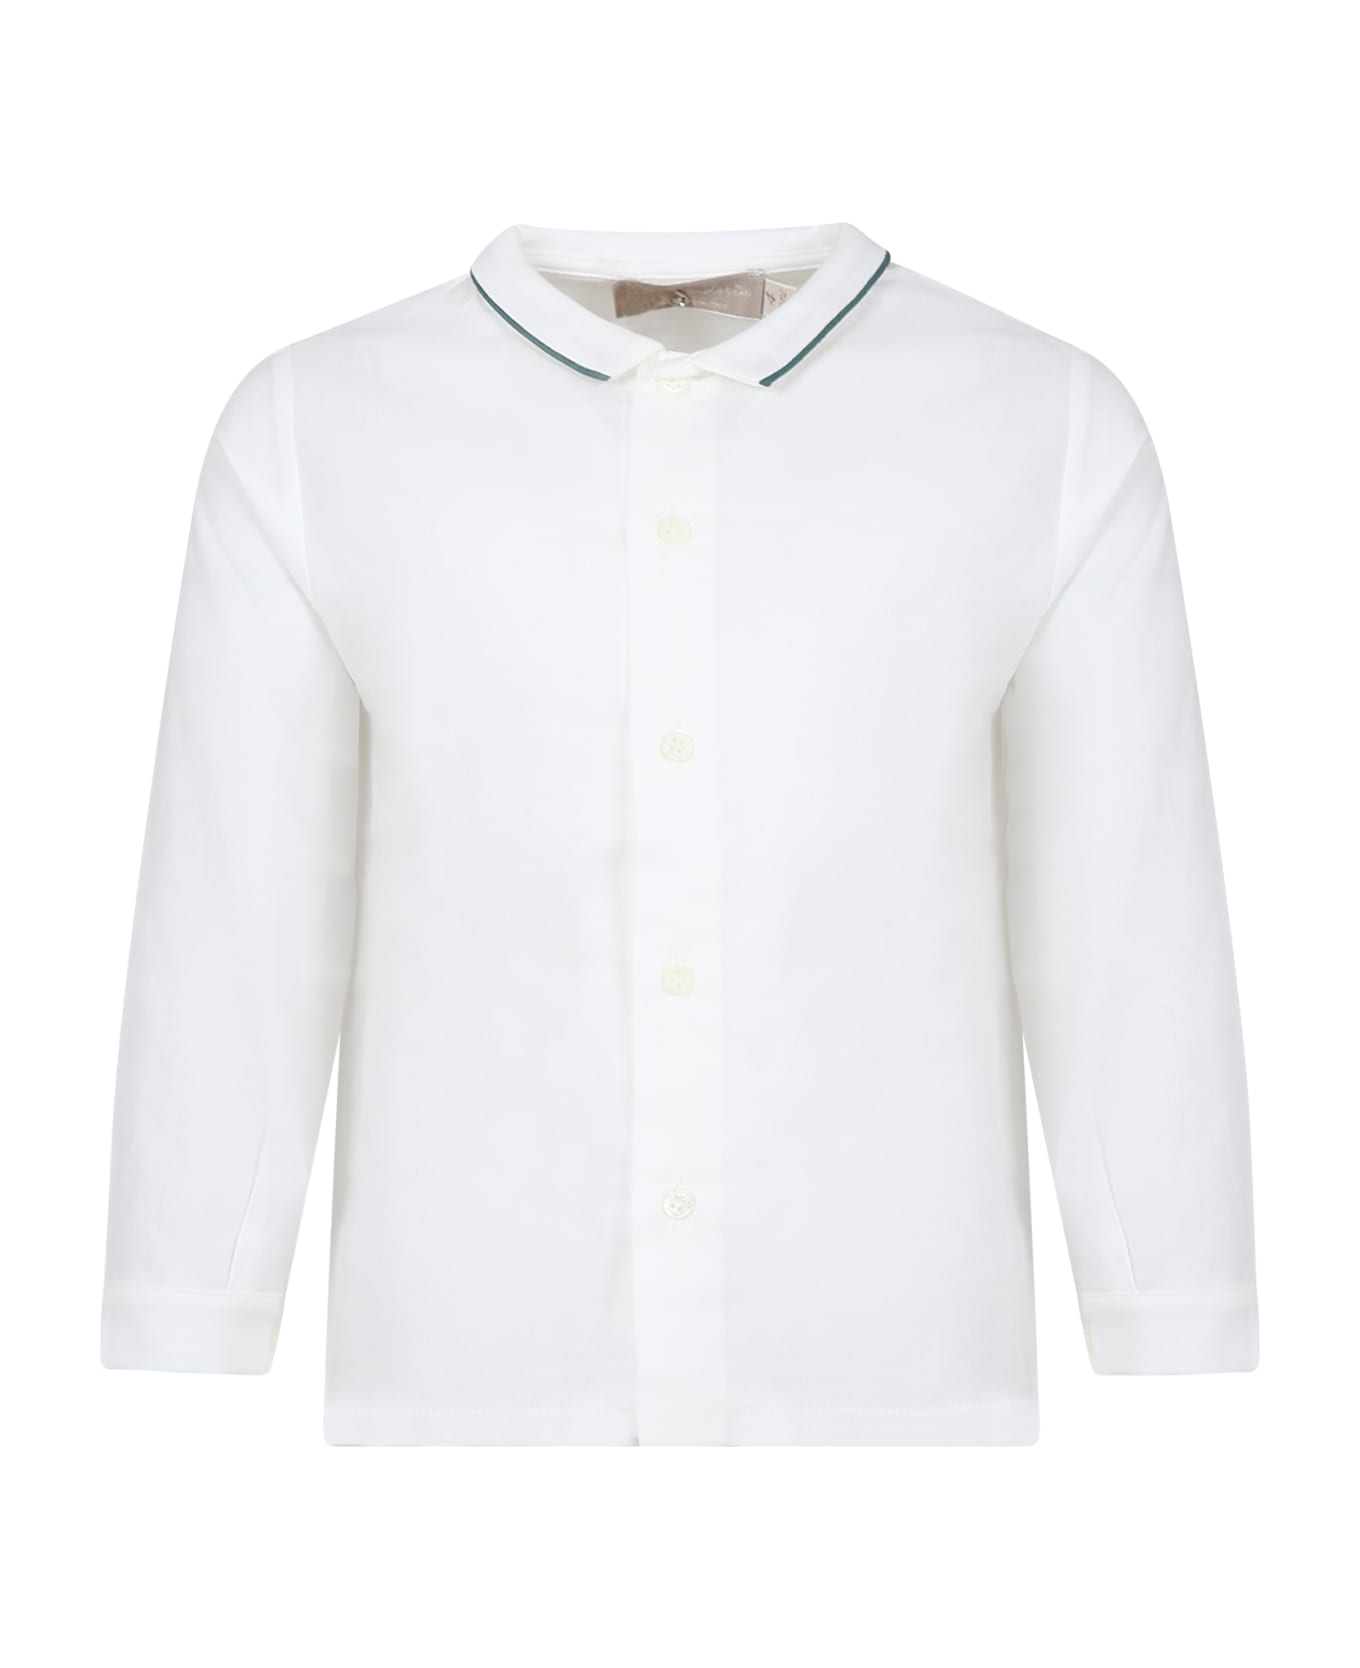 La stupenderia White Shirt For Boy - White